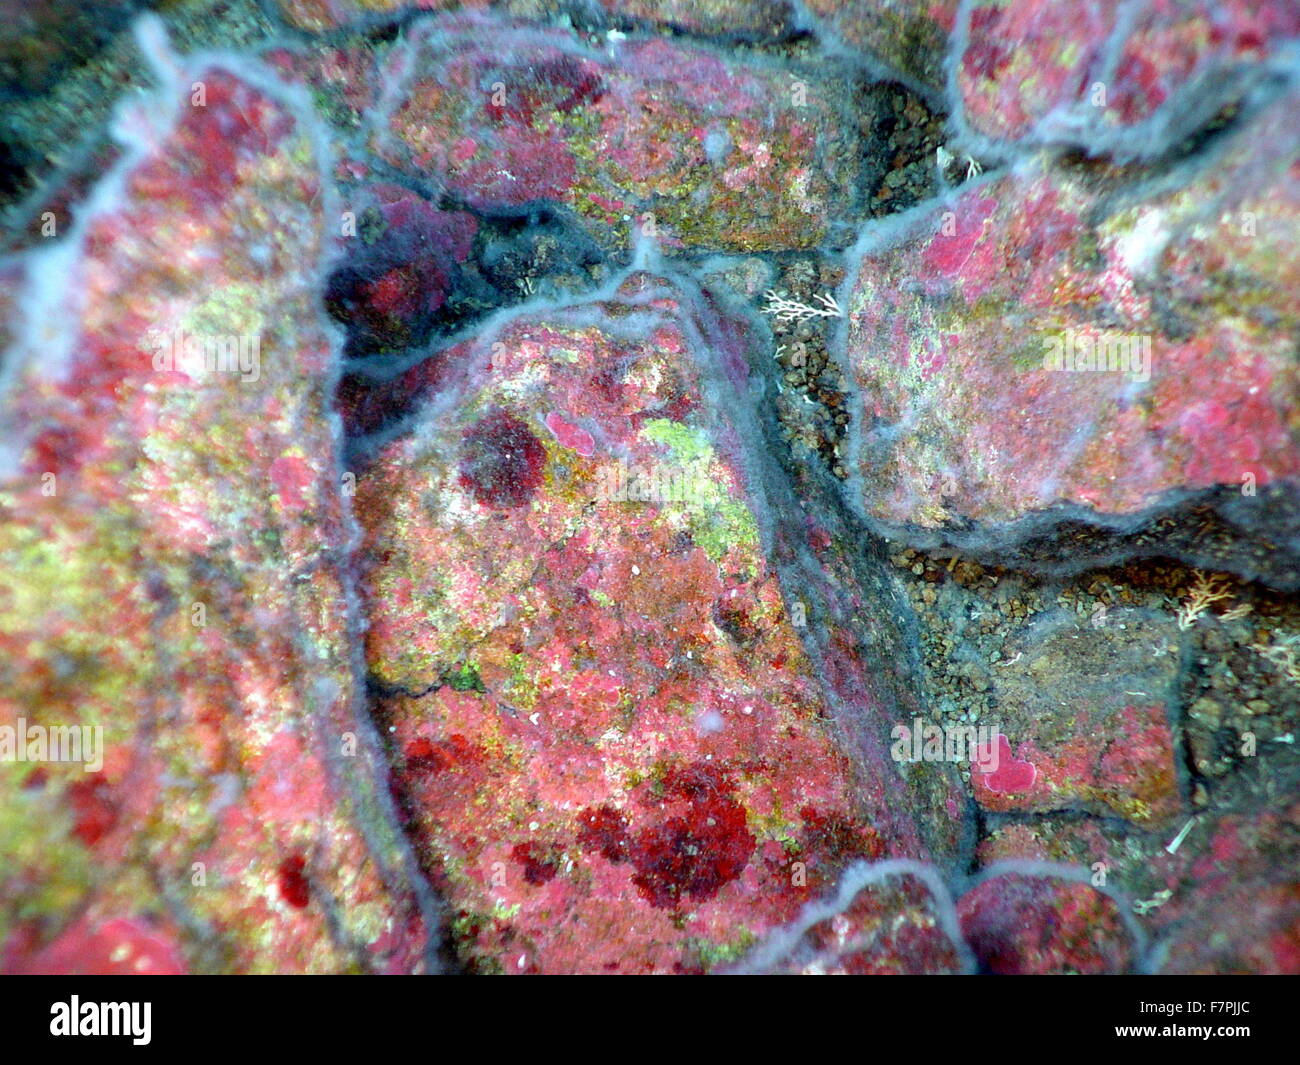 Des taches de rouge et d'algues vertes encroûtantes passer sous le tapis de bactéries filamenteuses sur les surfaces rocheuses. Mariana Arc, région ouest de l'océan Pacifique. Datée 2004 Banque D'Images